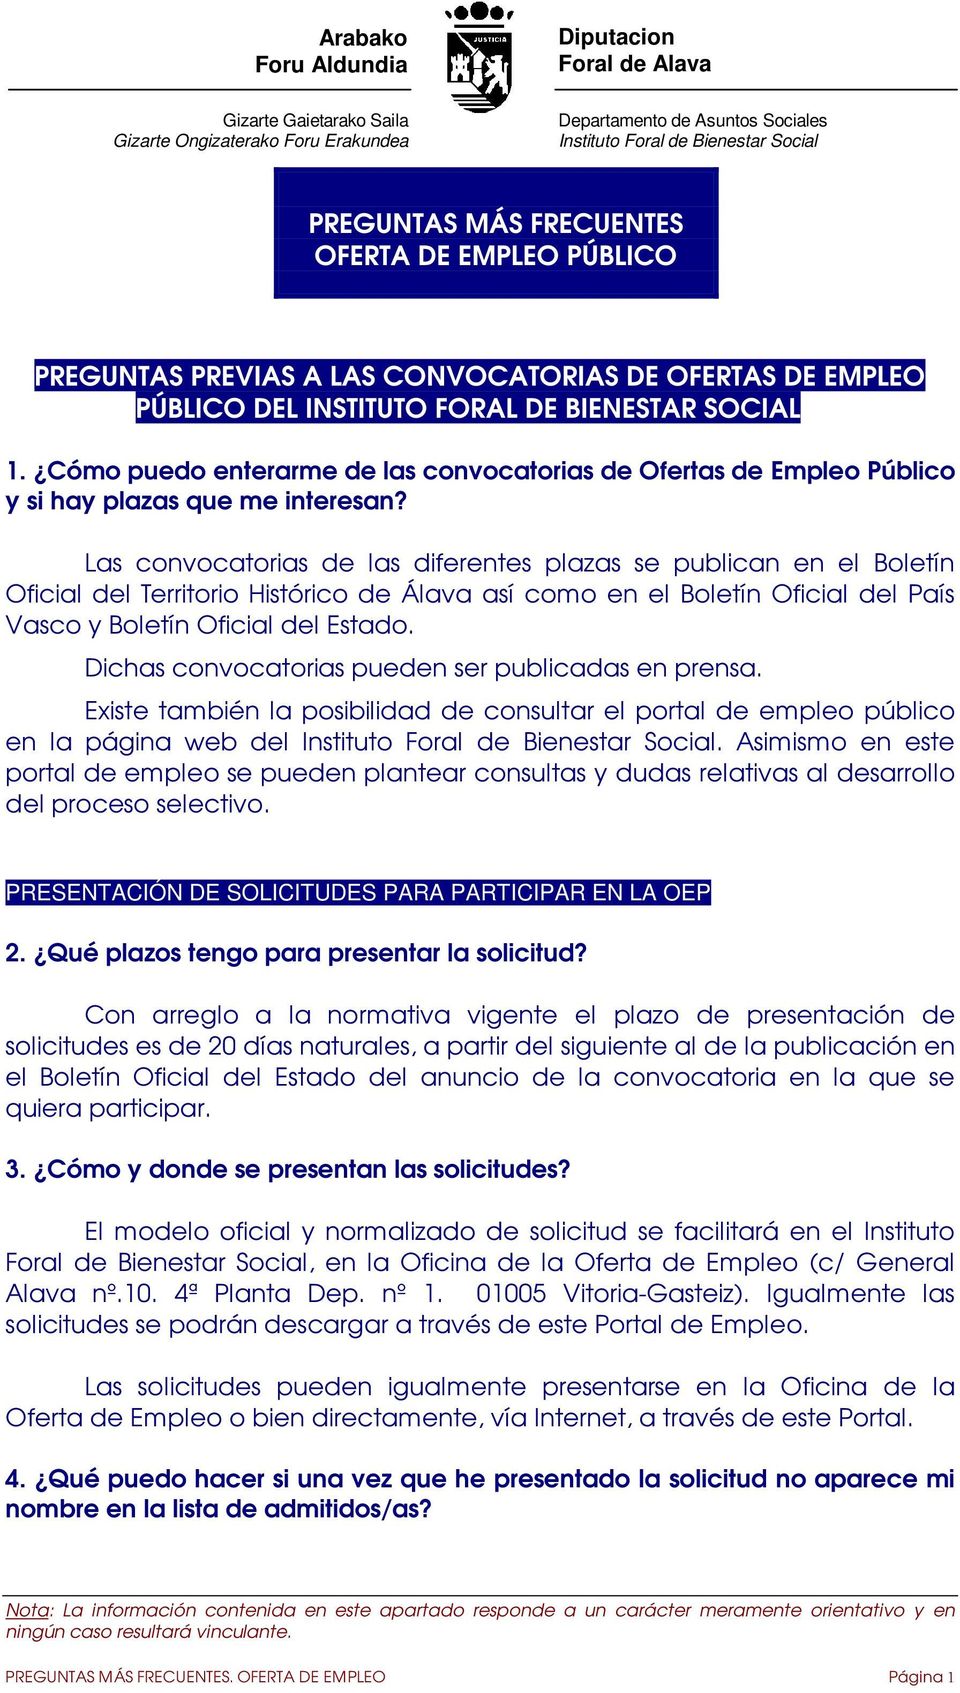 Las convocatorias de las diferentes plazas se publican en el Boletín Oficial del Territorio Histórico de Álava así como en el Boletín Oficial del País Vasco y Boletín Oficial del Estado.